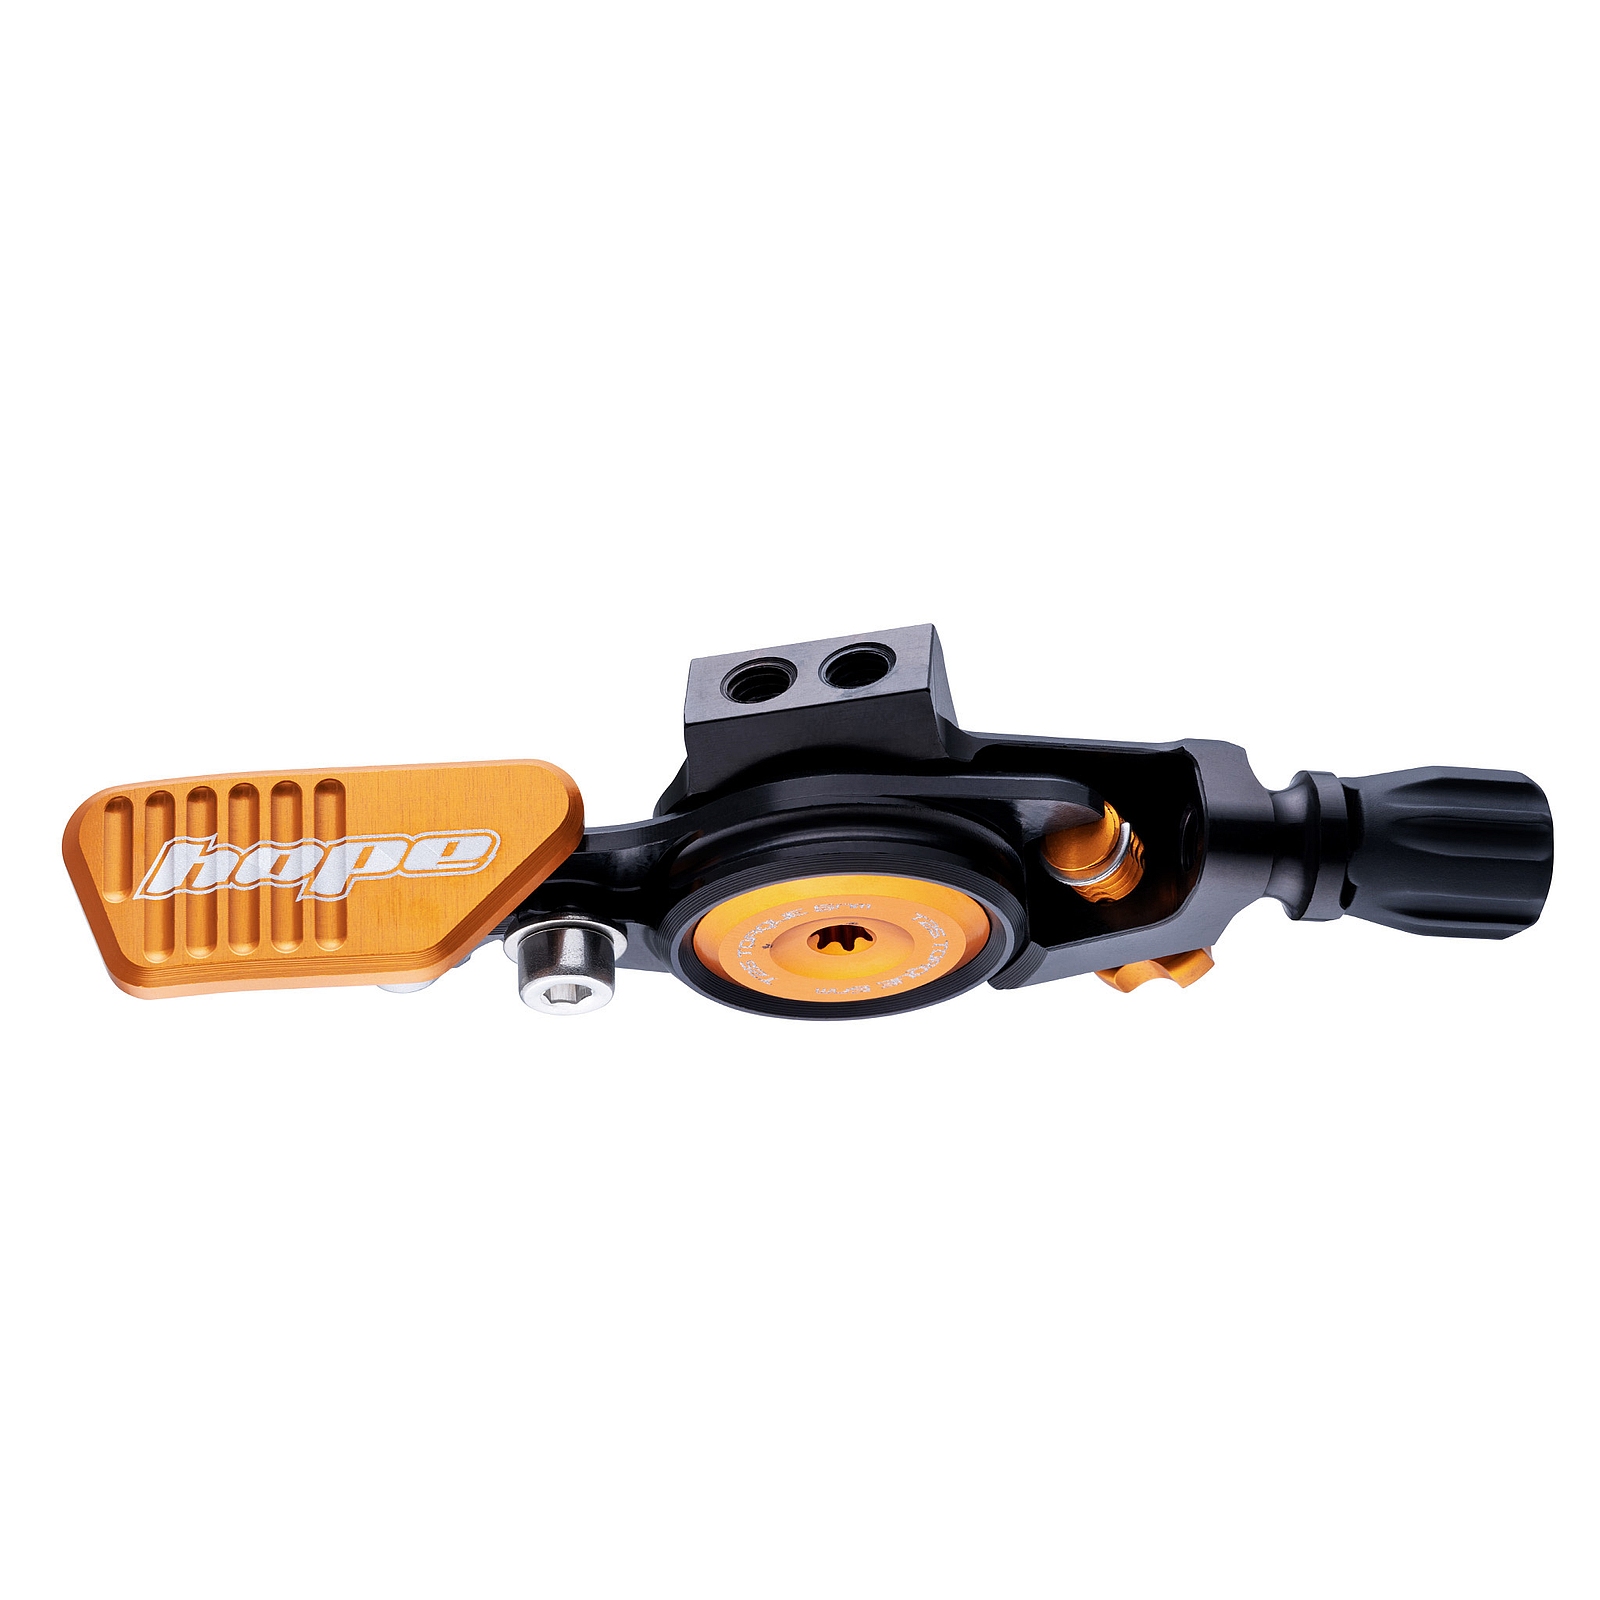 Productfoto van Hope Afstandshendel voor Telescopische Zadelpennen - zwart / oranje